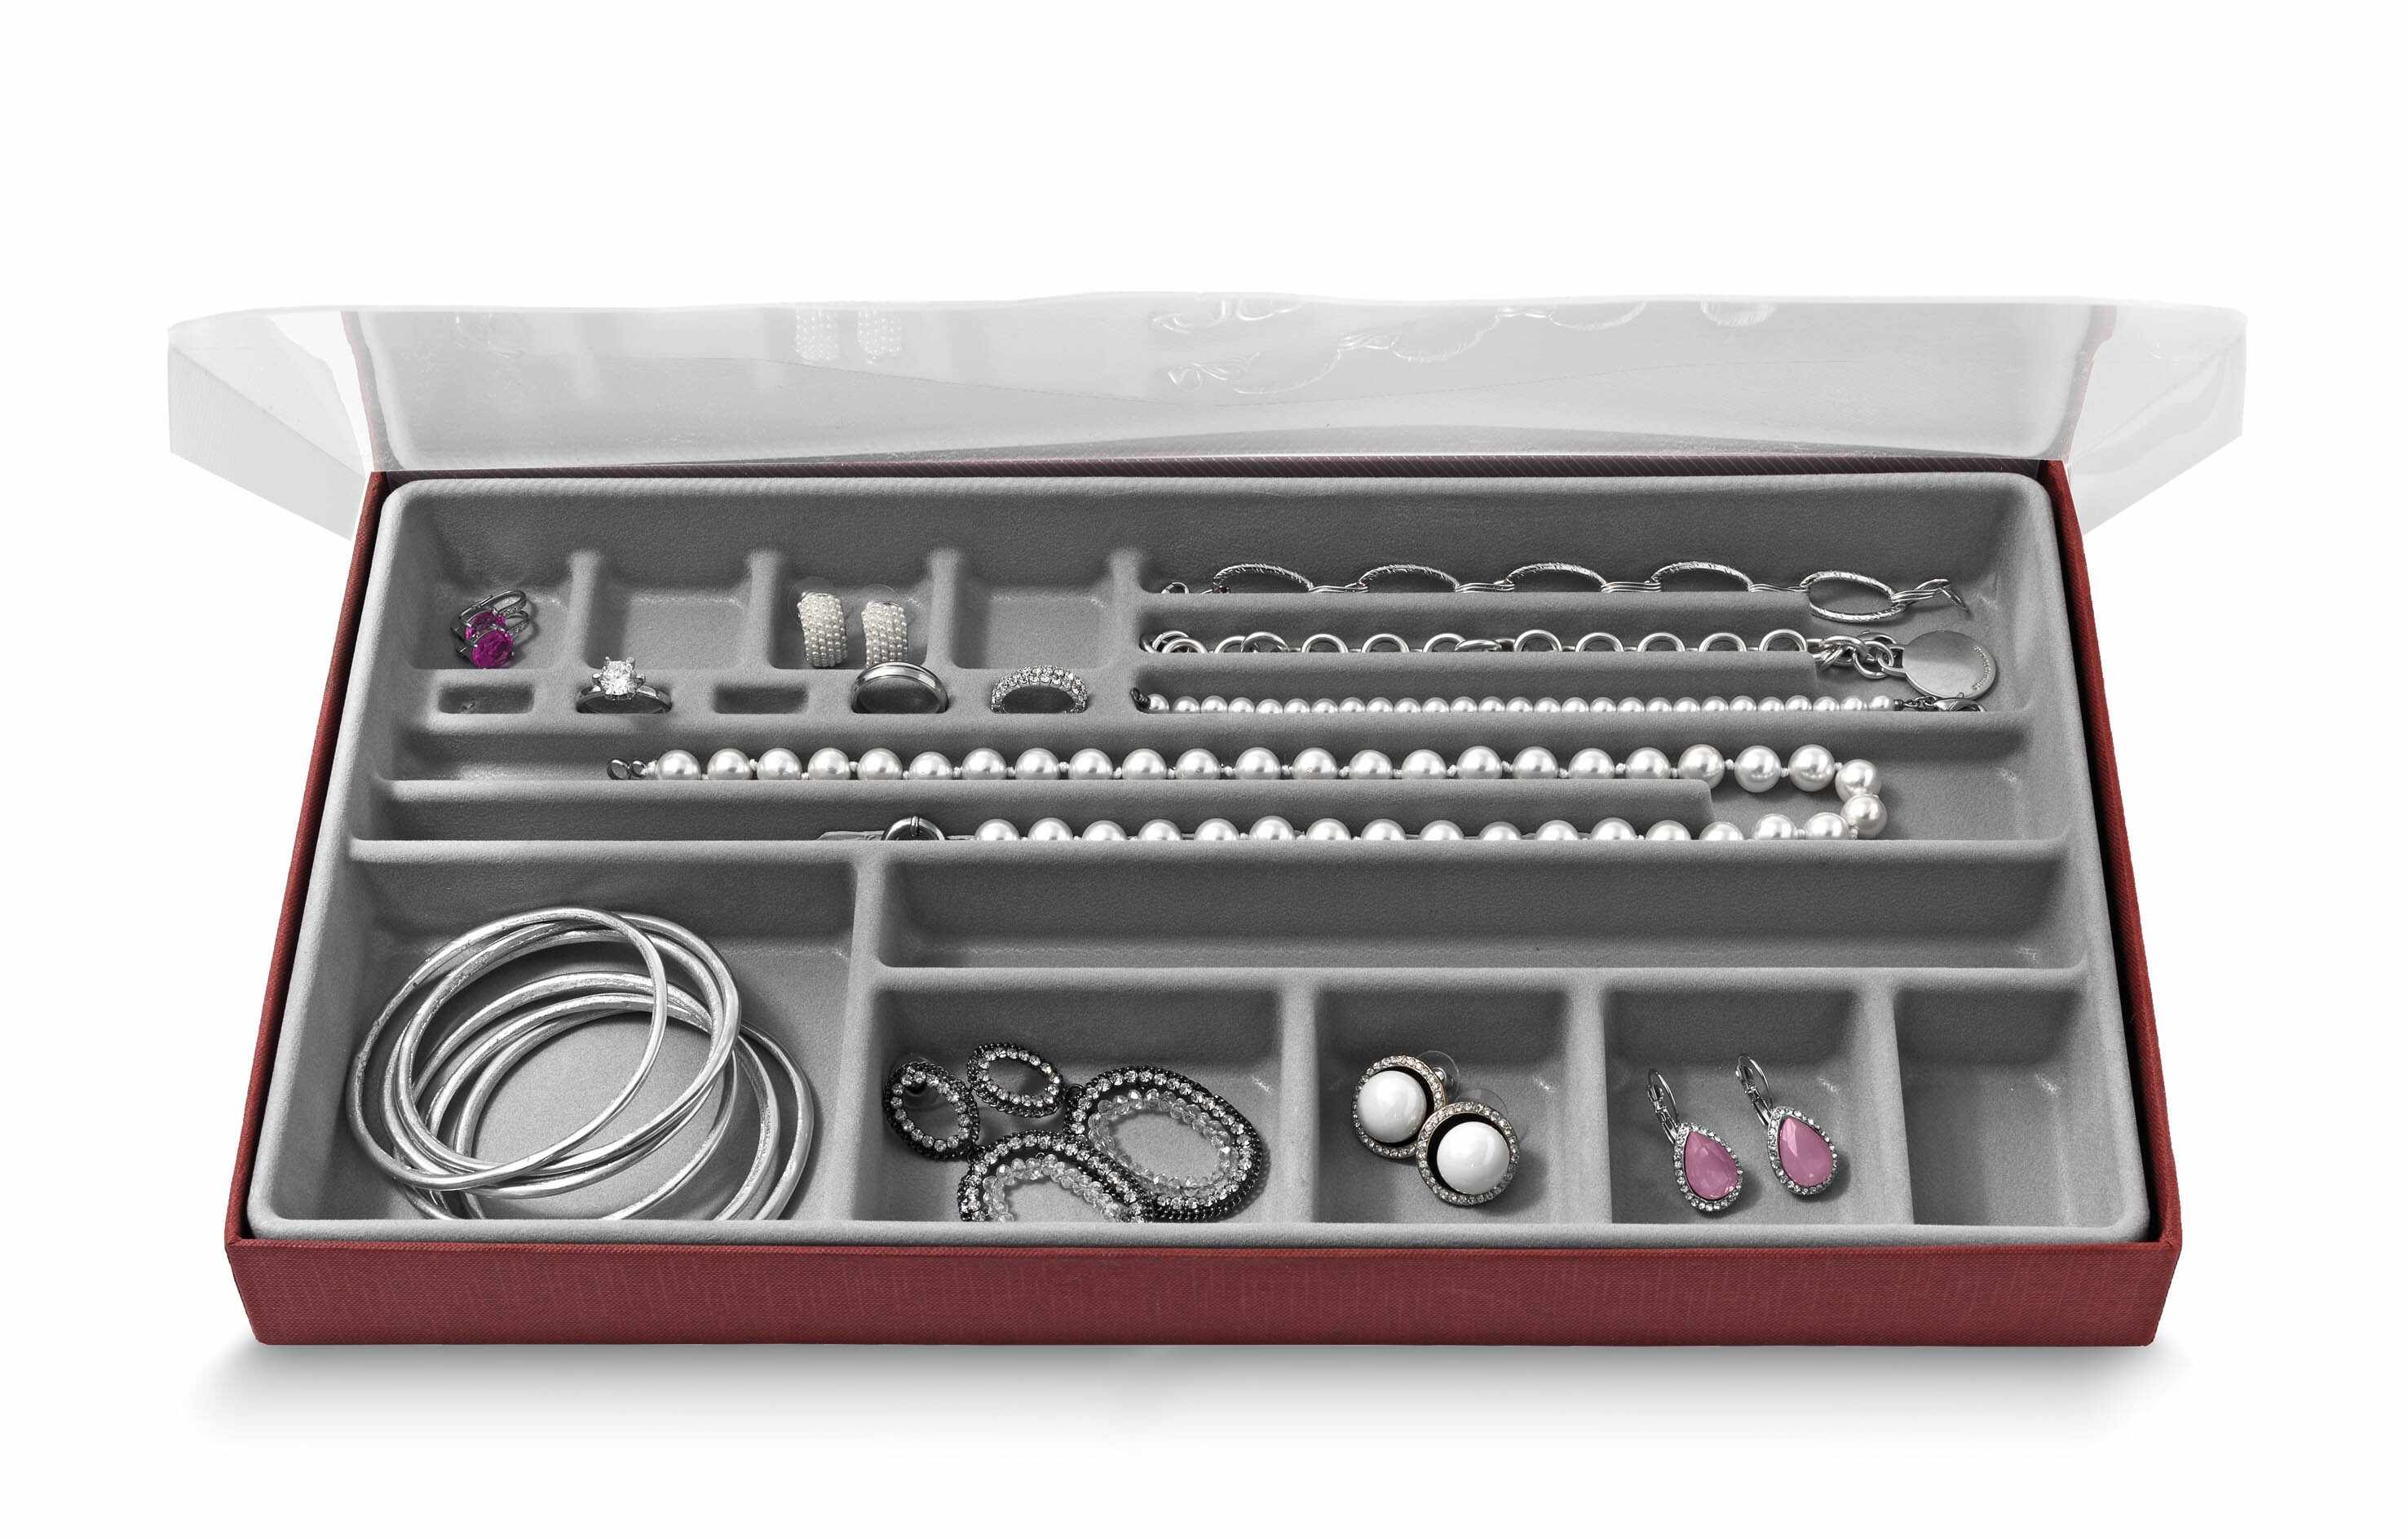 Organizator pentru sertar cu 19 compartimente, Jewel Gri, l37xA21,5xH3,5 cm